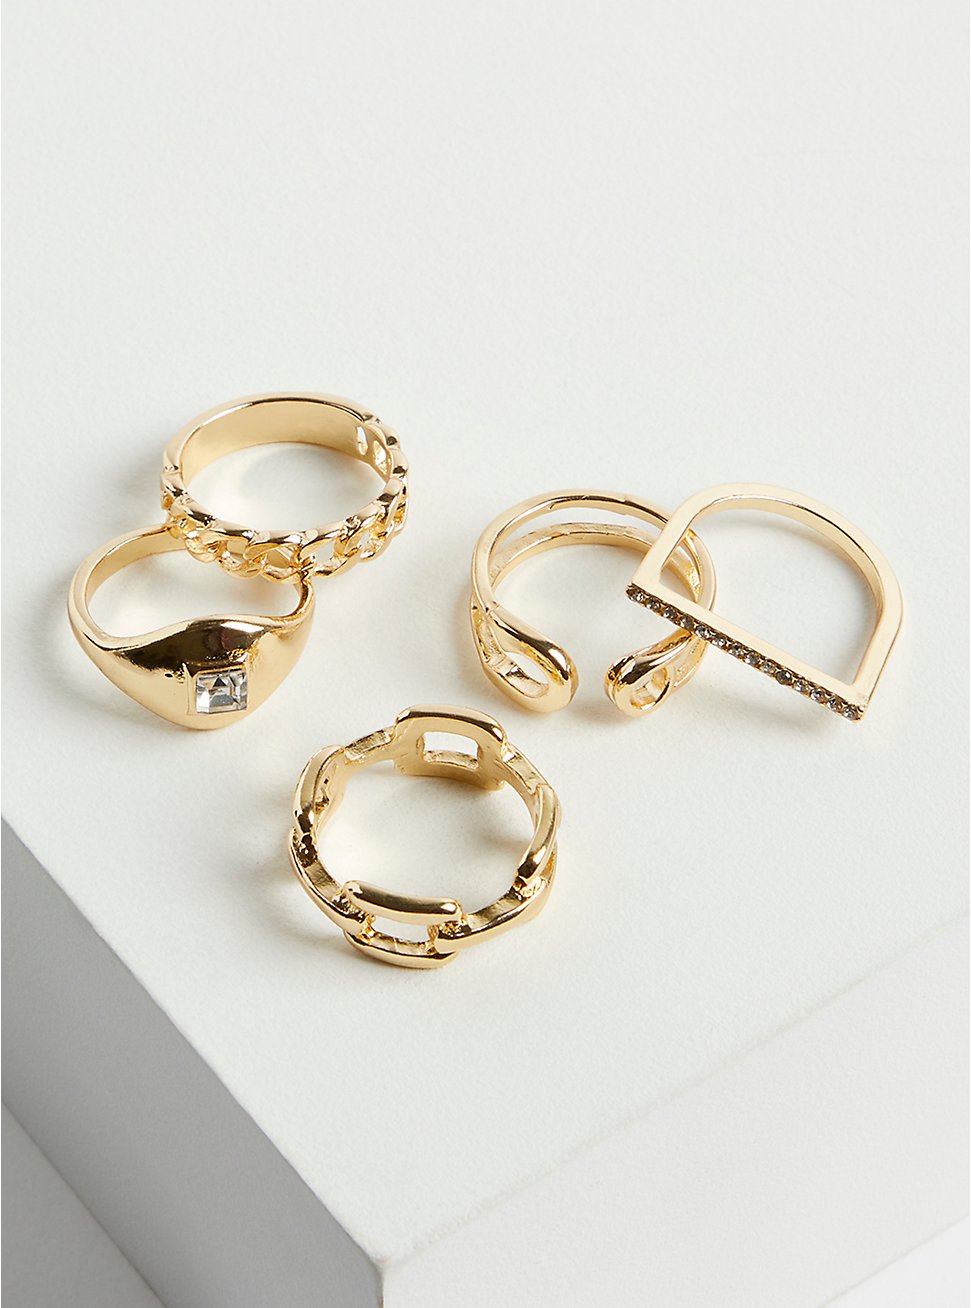 Link Ring Set of 7 - Gold Tone, GOLD, hi-res